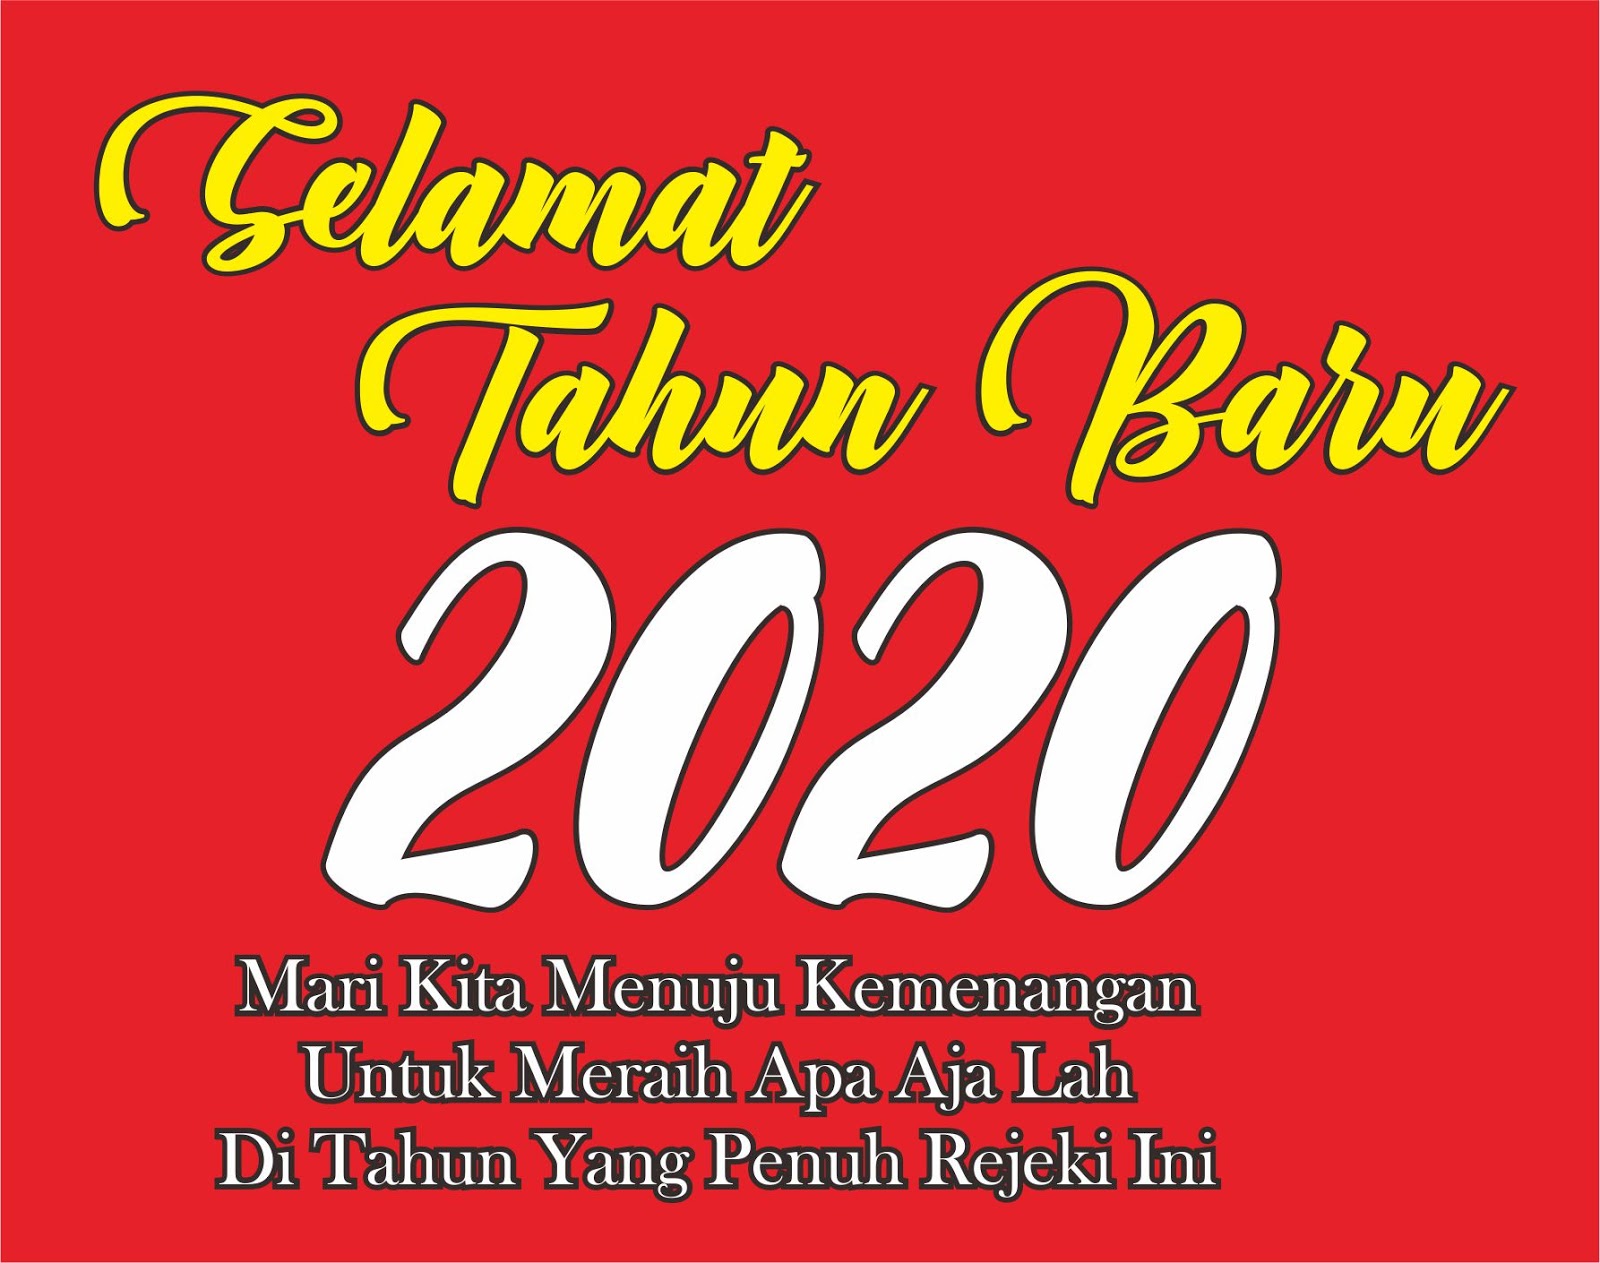 Download Template Kalender Nasional Jawa 2020 Lengkap Gambar